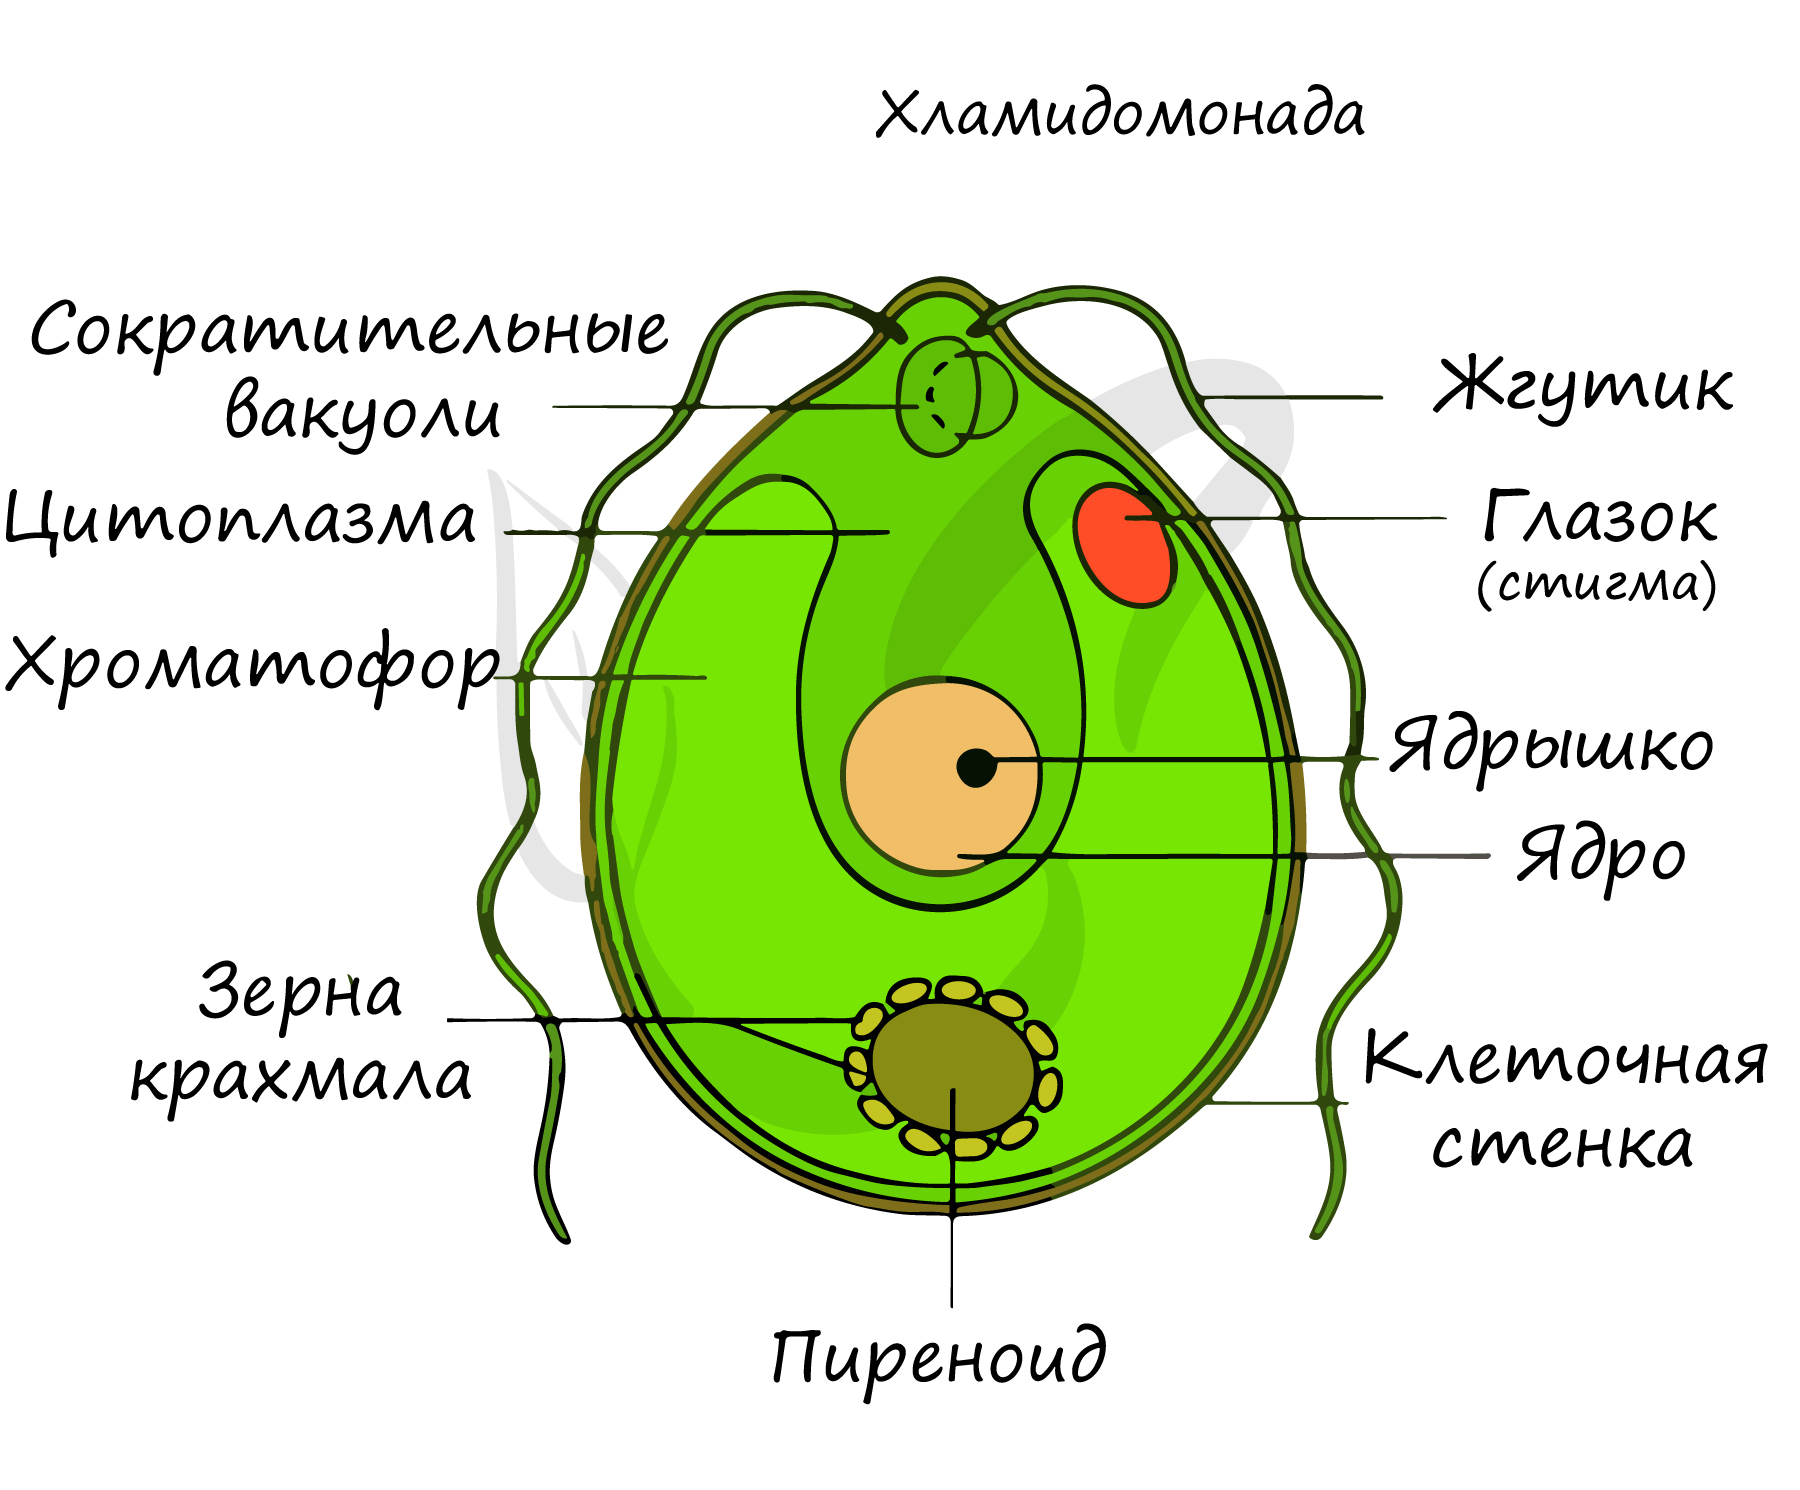 Рисунок клетки водорослей. Хламидомонада и хлорелла. Одноклеточная водоросль хламидомонада. Строение клетки Chlamydomonas. Строение одноклеточных зеленых водорослей.